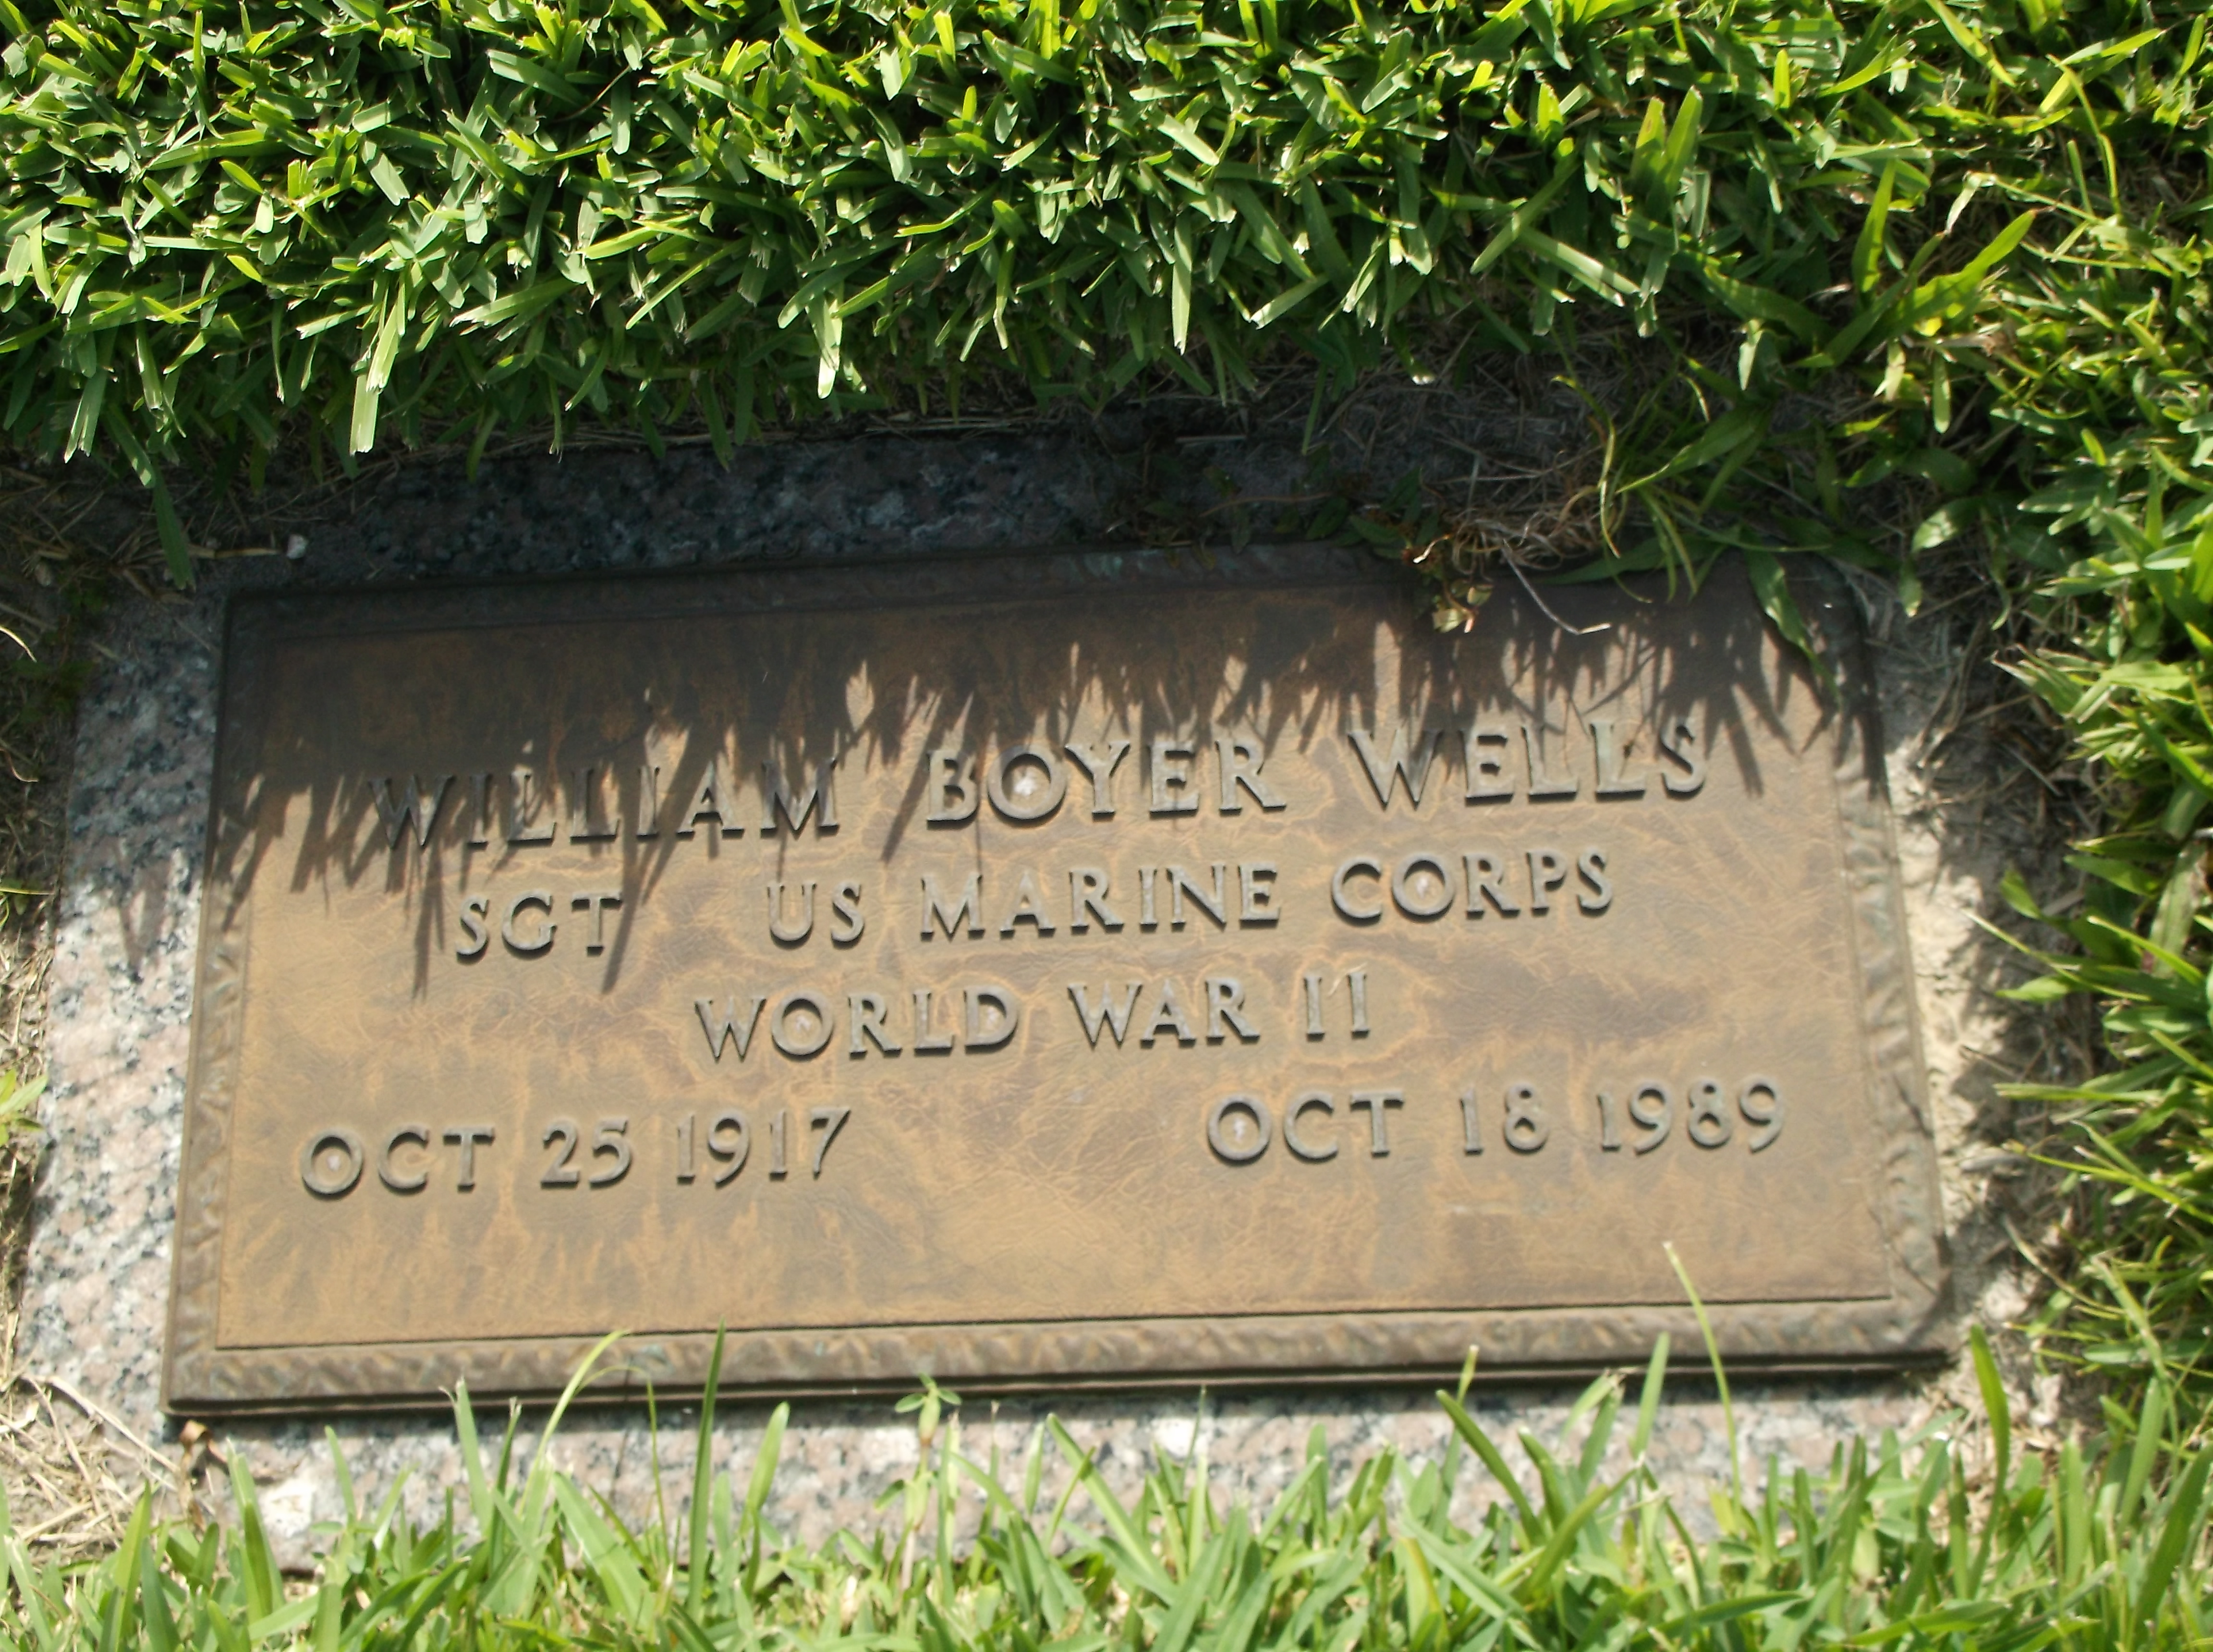 William Boyer Wells